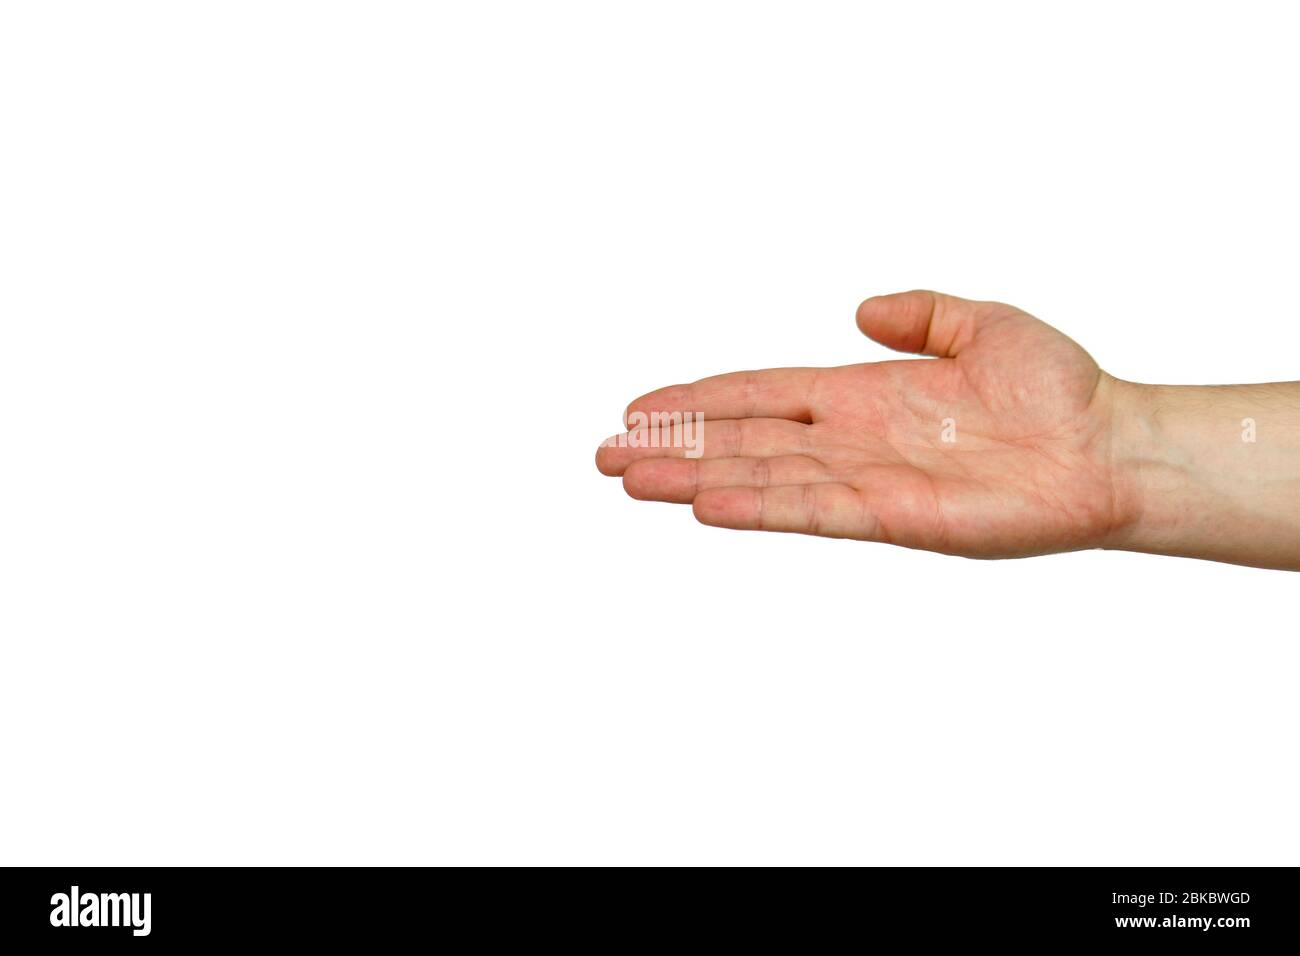 Männliche Hände auf grauem Hintergrund. Fingergesten. Gestikulationshände  Stockfotografie - Alamy